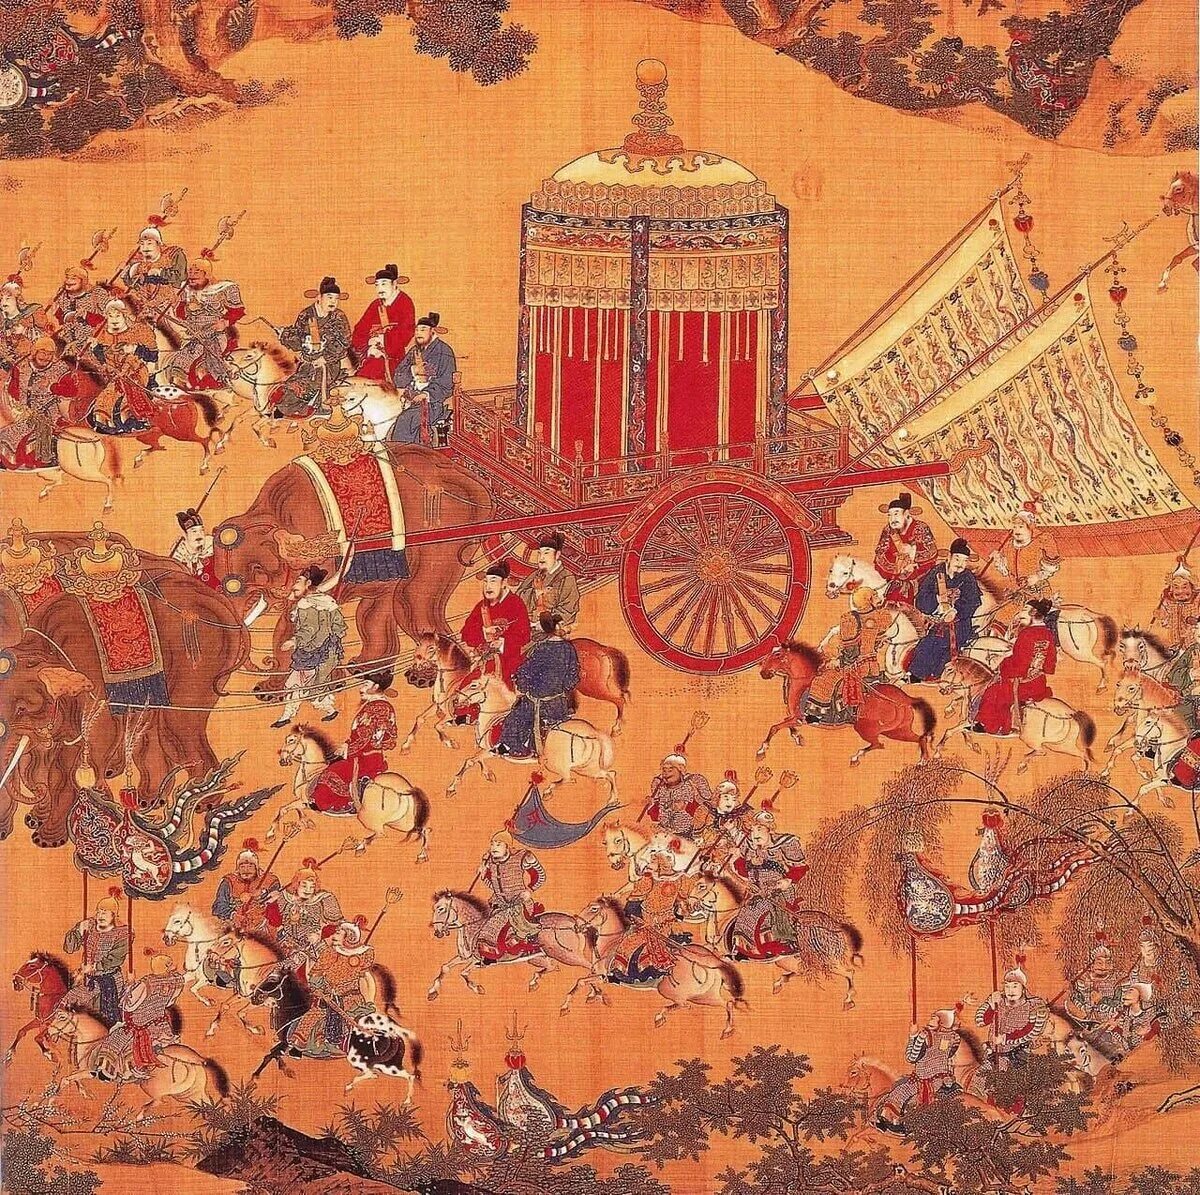 Китай 1368-1644 правление династии мин. Династия мин (1368 – 1644 г.н.э.). Династия Цин (1644-1911 гг.). Династия мин в Китае.